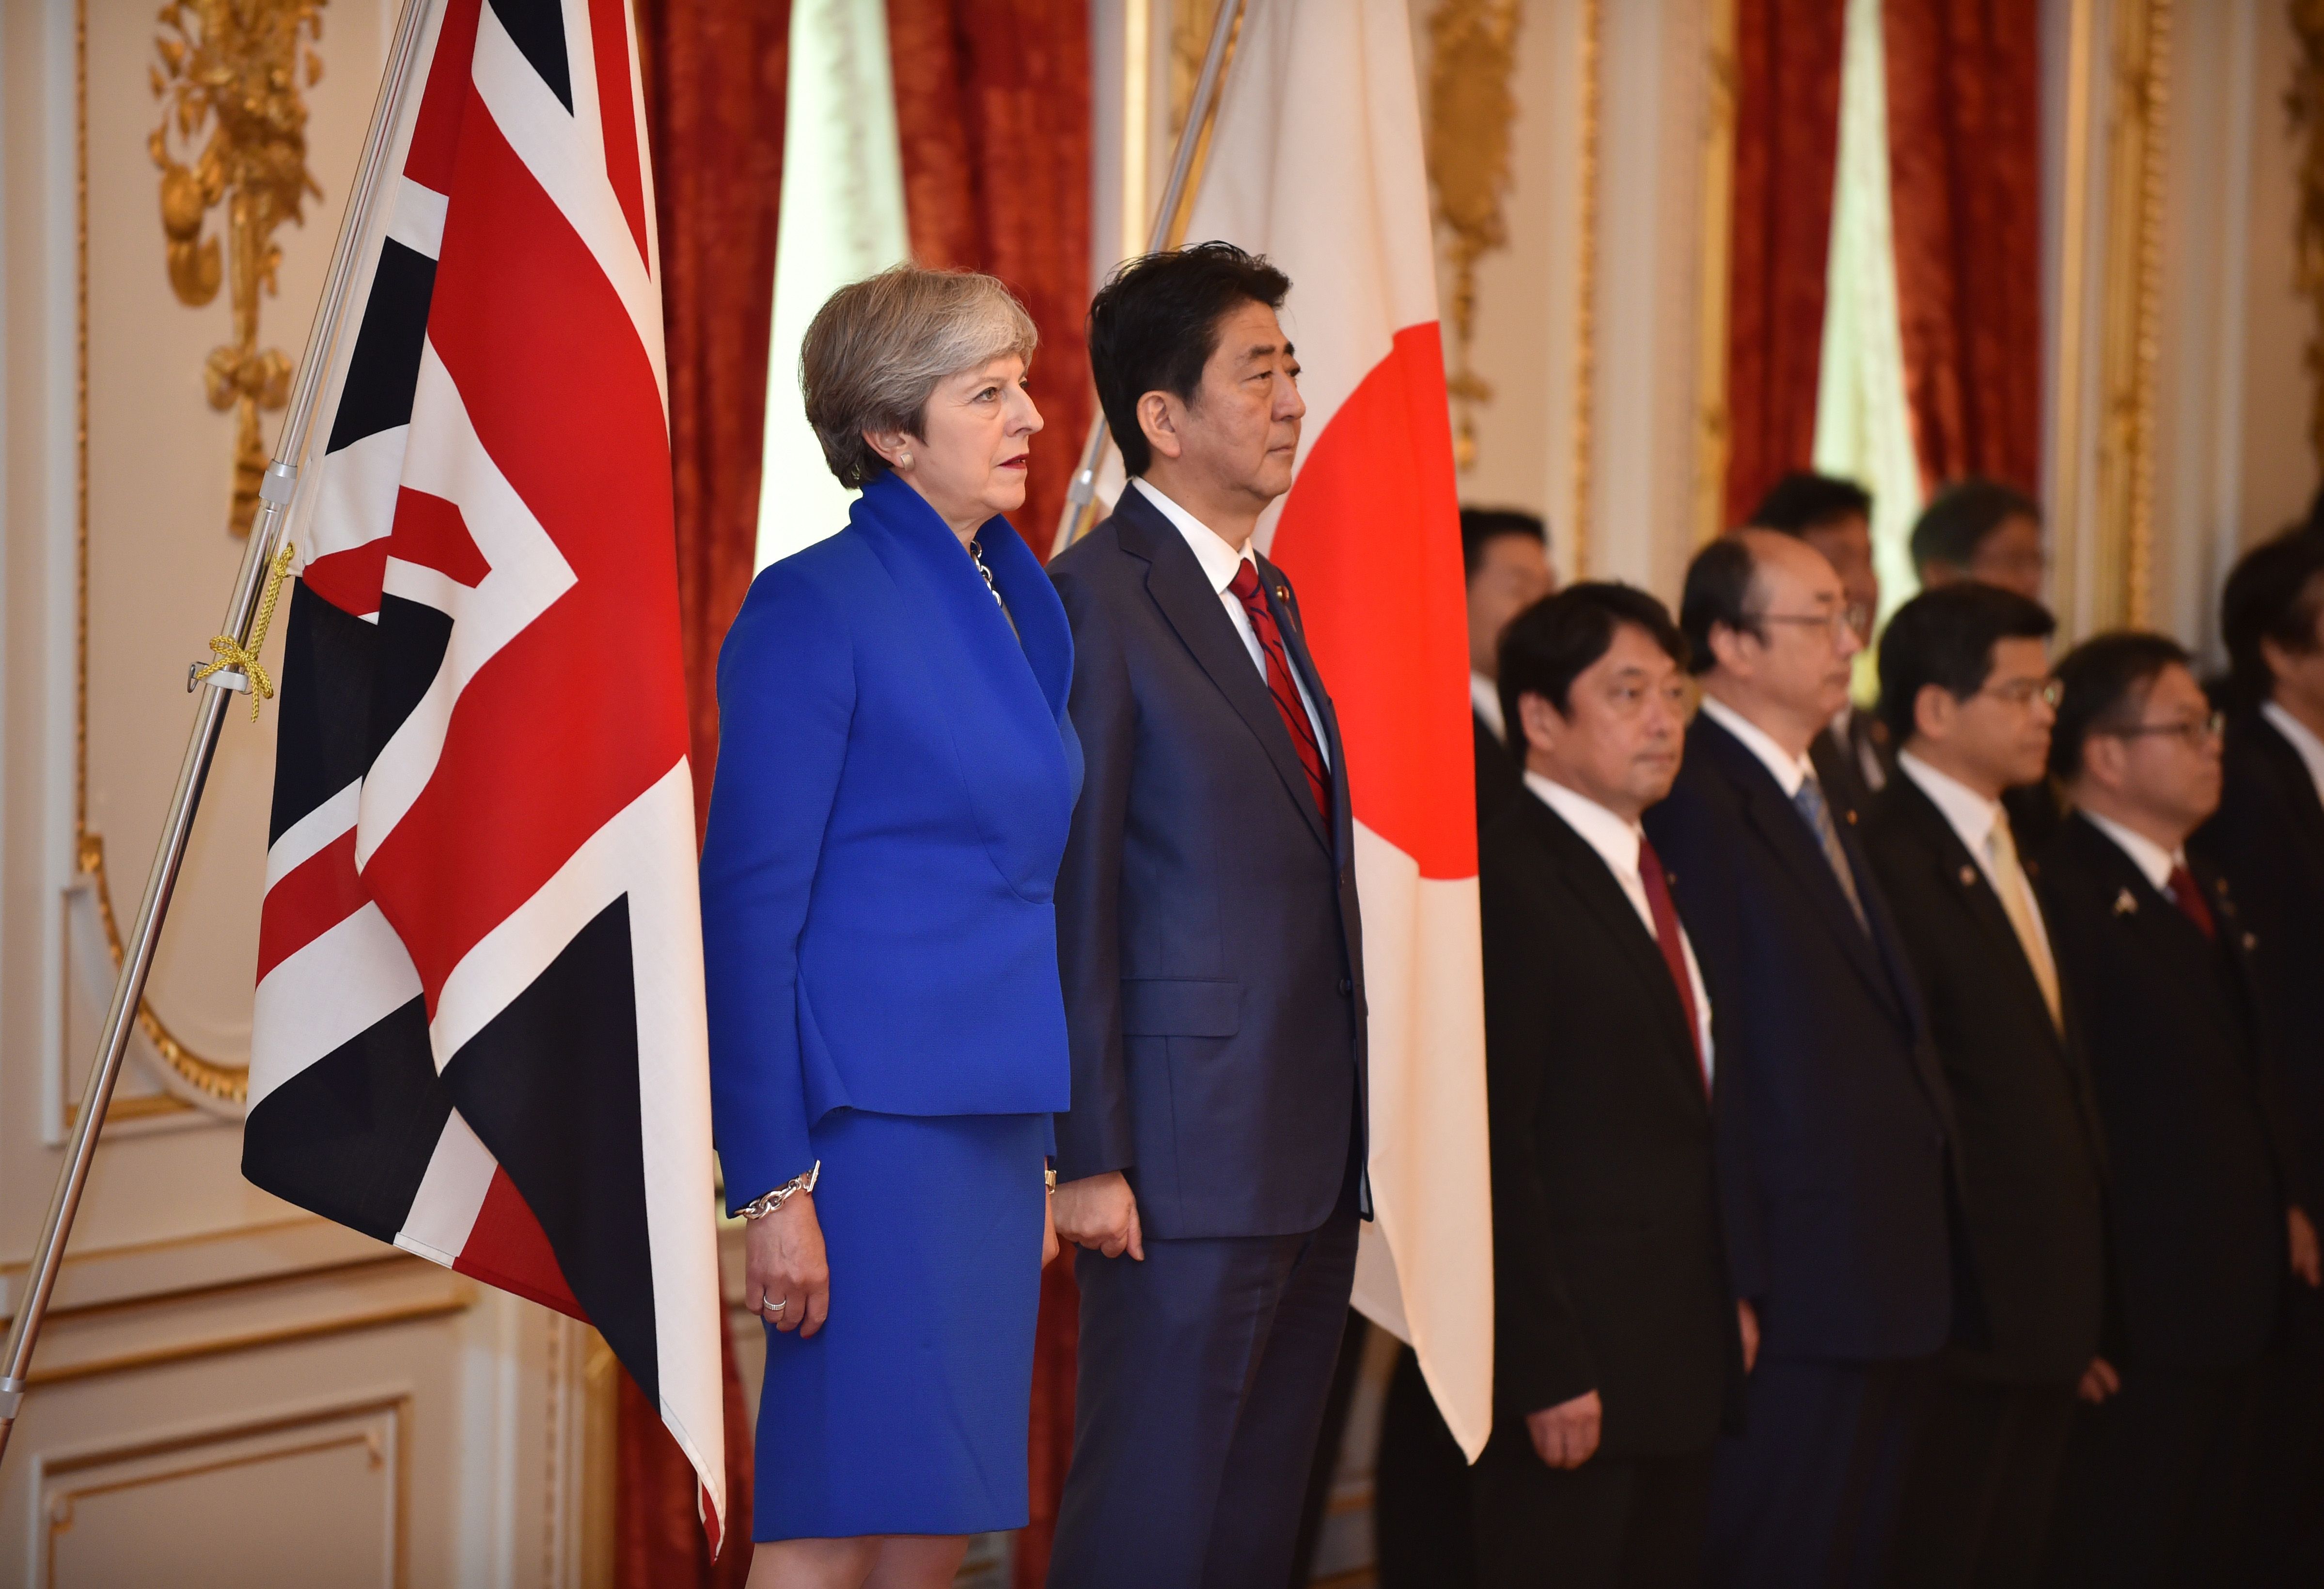 رئيسا وزراء اليابان وبريطانيا يقفان آثناء أداء النشيد الوطنى للبلدين